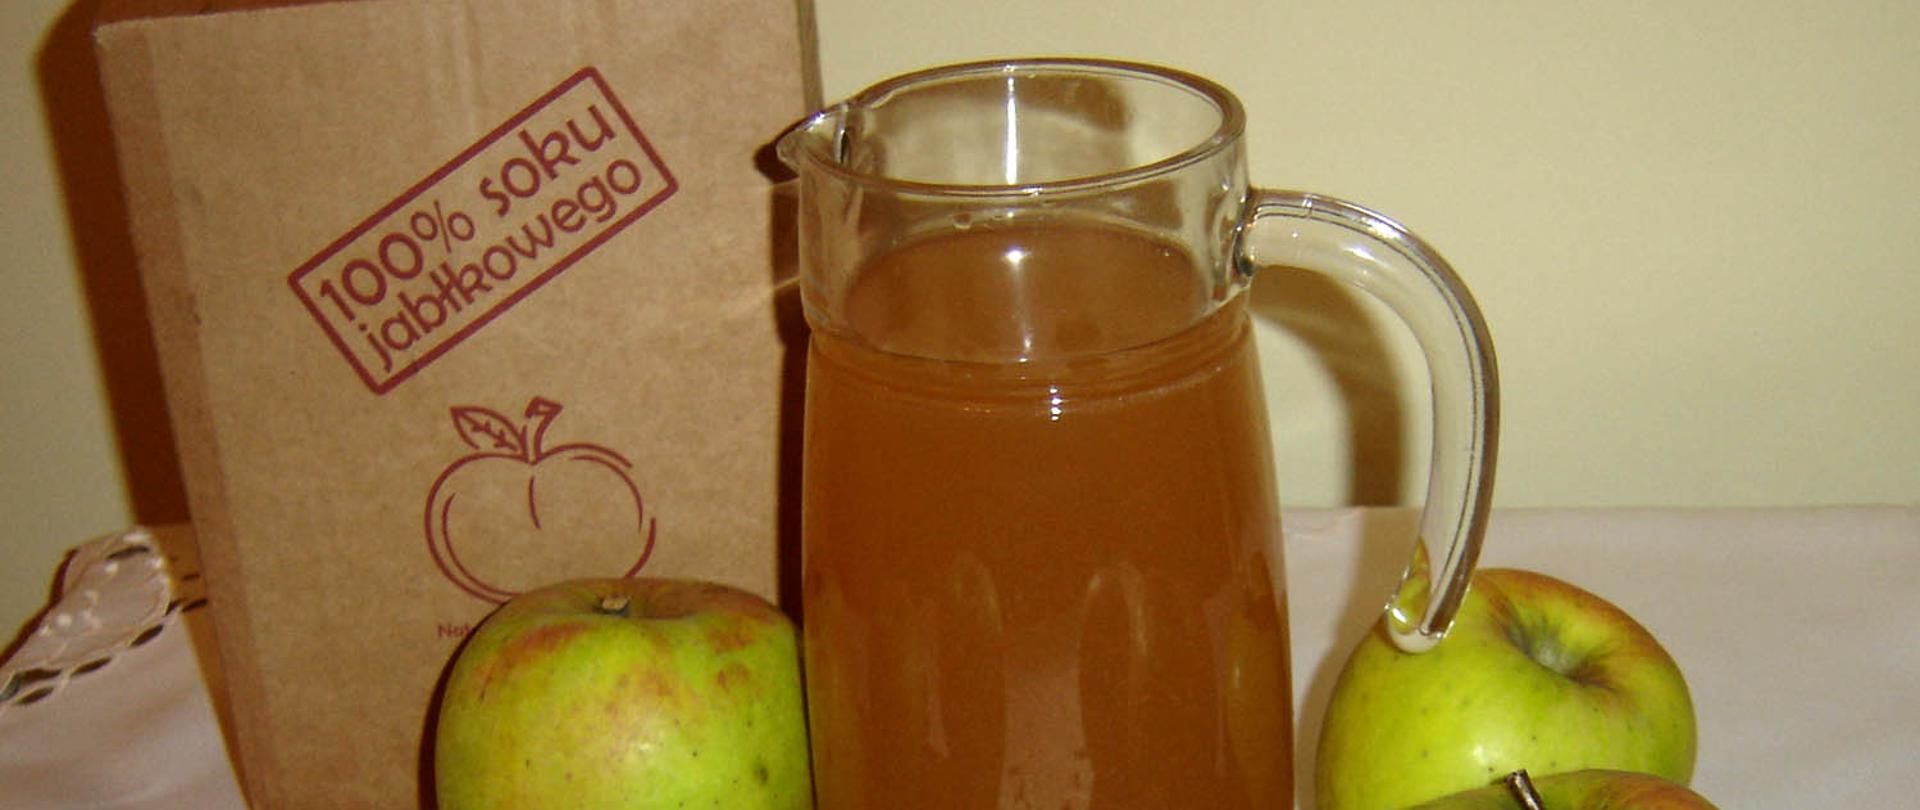 sok jabłkowy z Kałęczewa